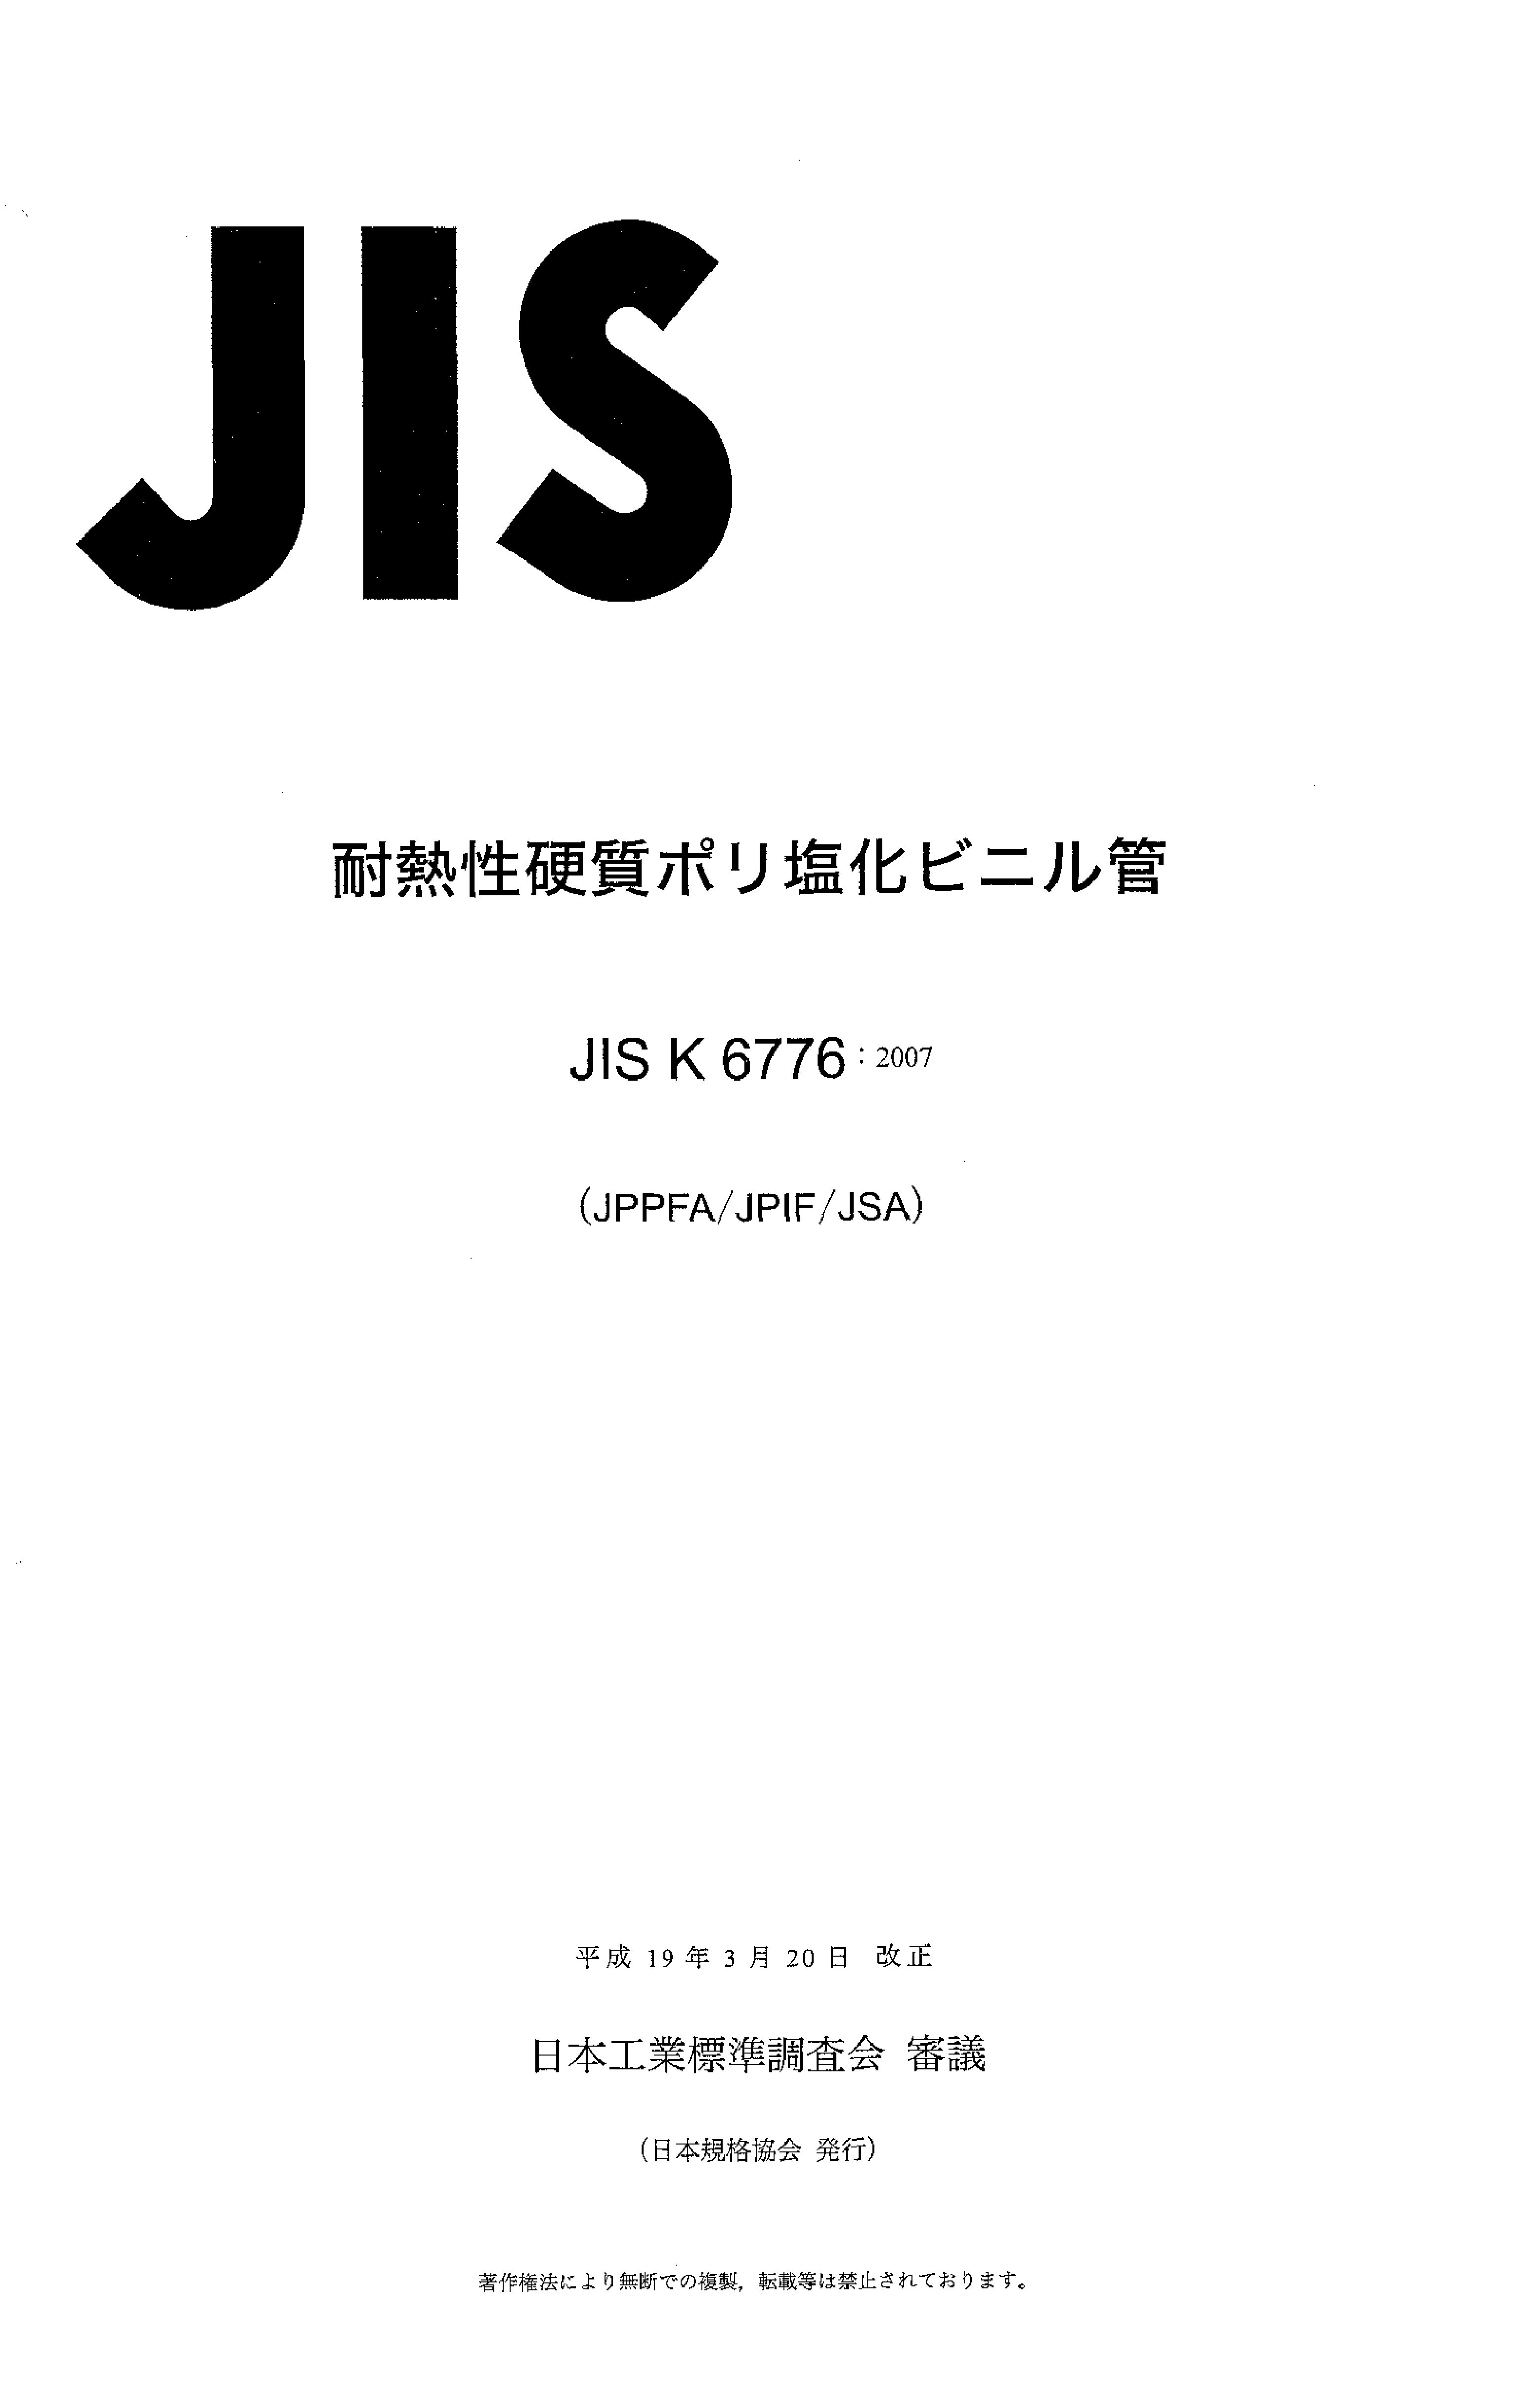 JIS K 6776:2007